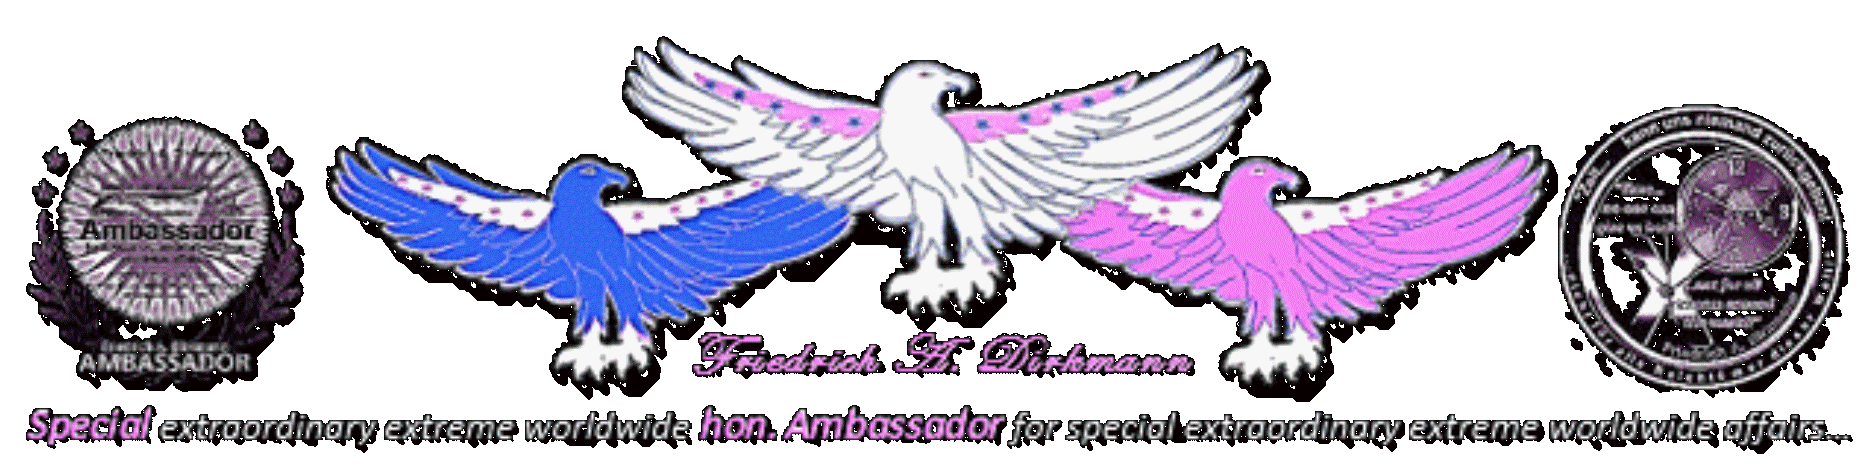 hon. Ambassador Friedrich A. Dirkmann Logo invert01